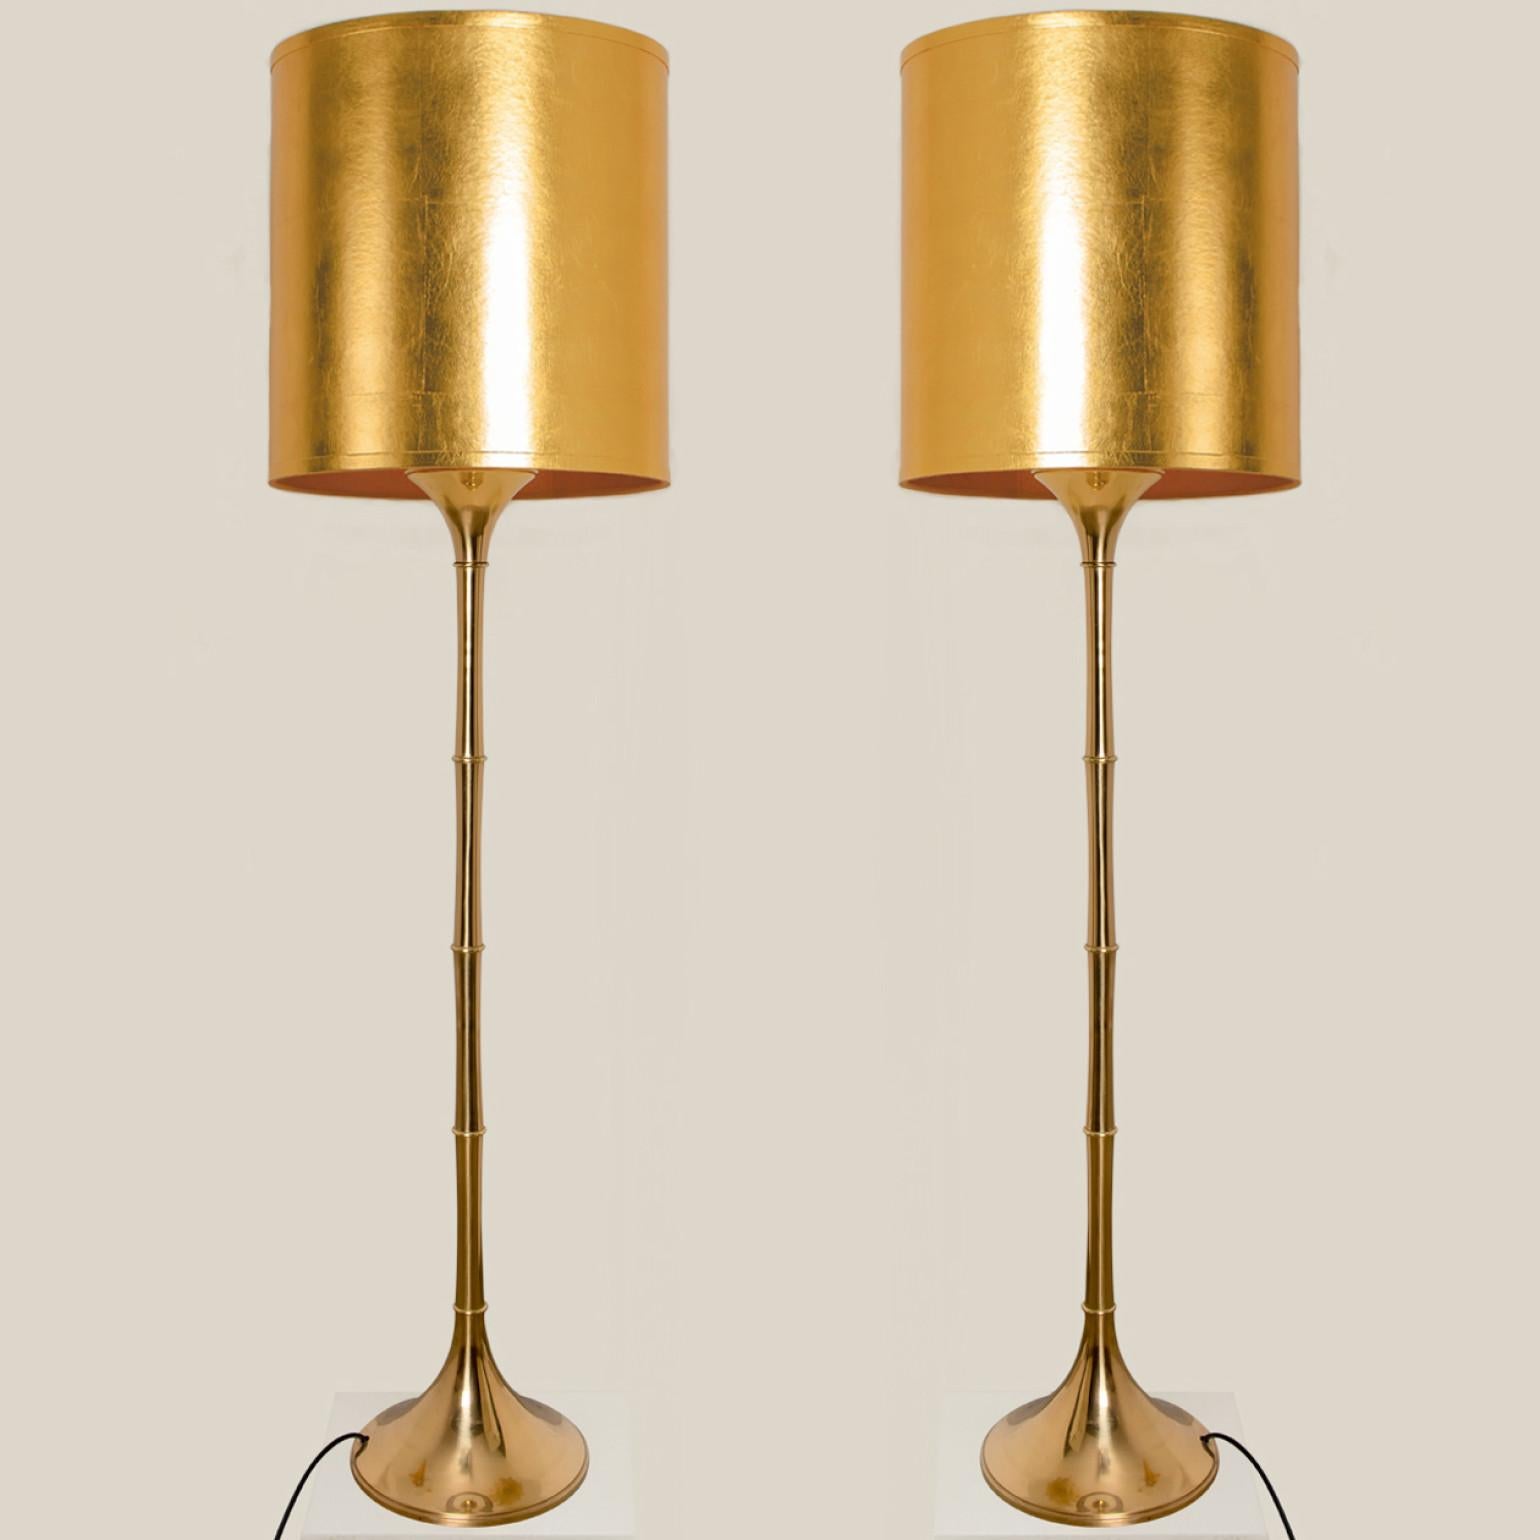 Élégants lampadaires en bambou et laiton Modèle conçu par Ingo Maurer, 1968 pour Design/One Munich, Allemagne.
Avec de nouveaux abat-jour sur mesure en métal doré et un abat-jour intérieur en bronze. Réalisé par René Houben. D'autres abat-jour sont